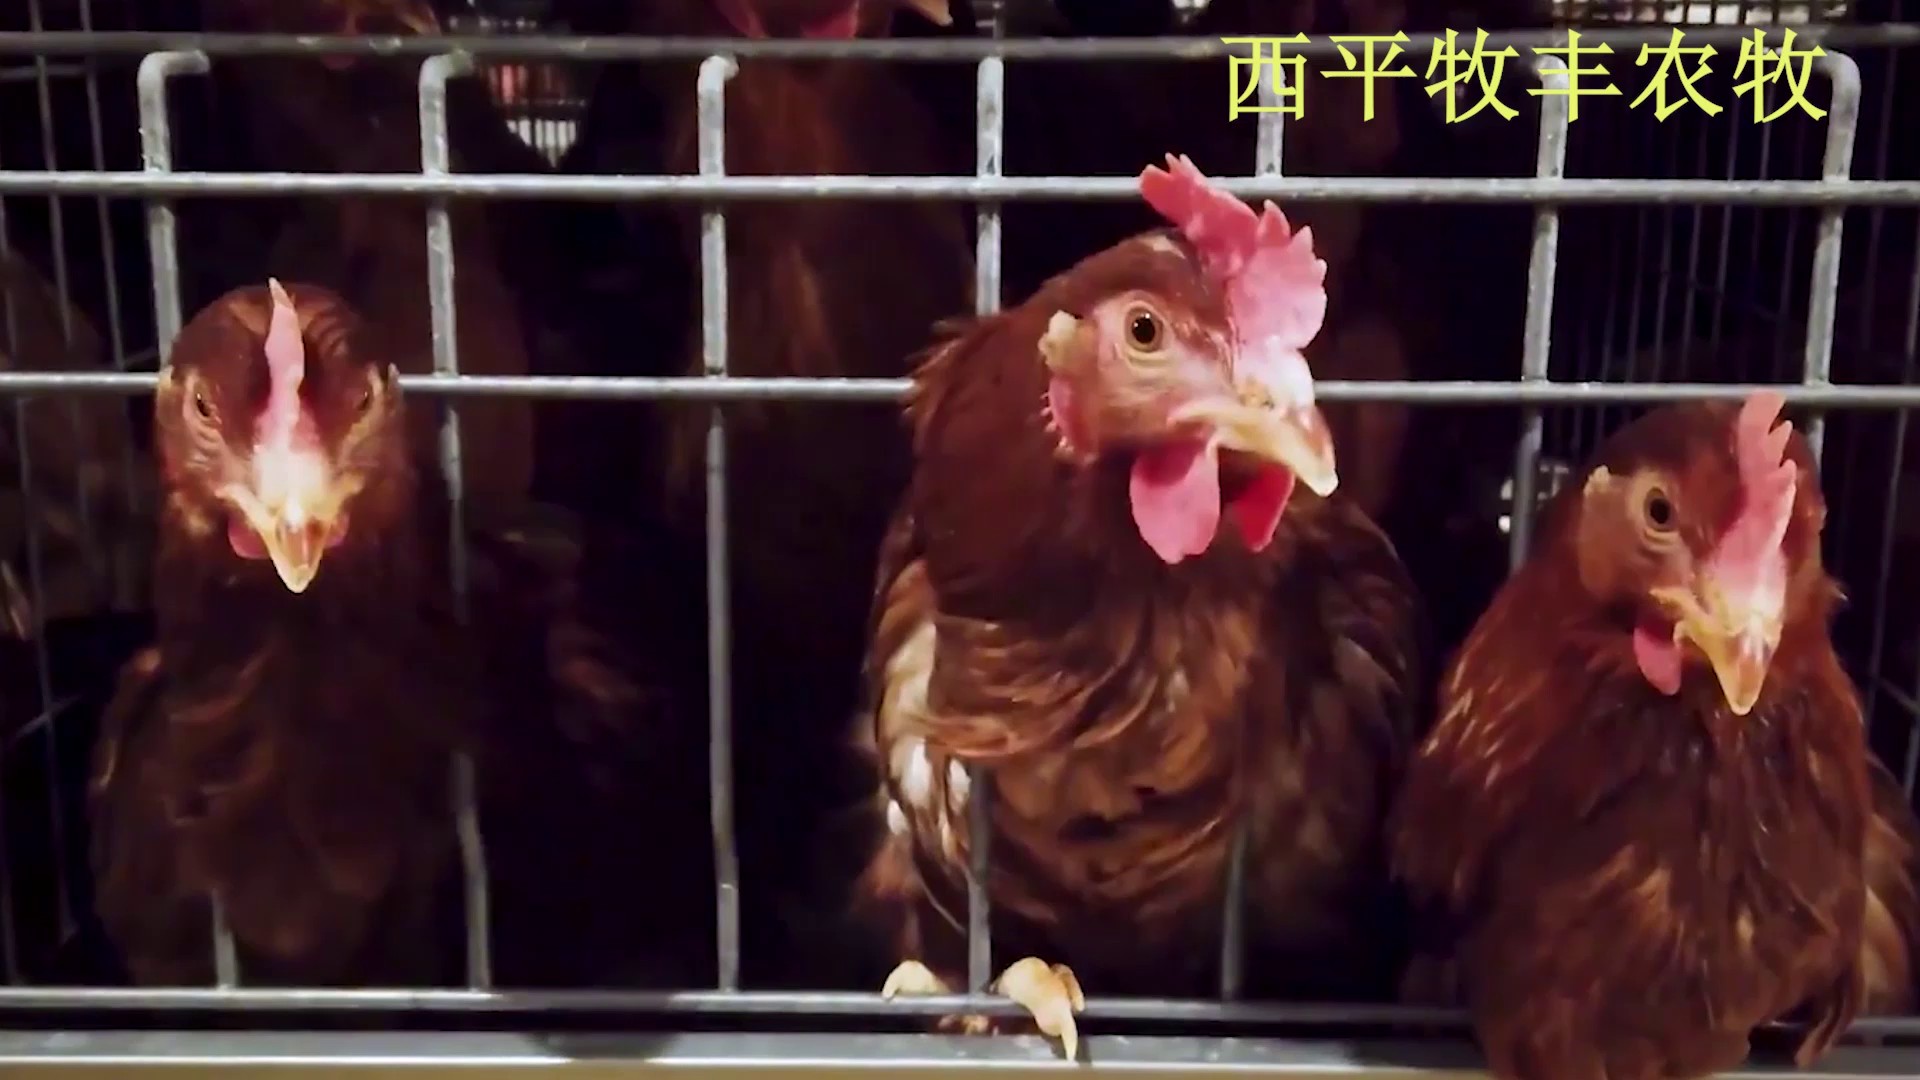 广东自动化养鸡取暖设备,养鸡